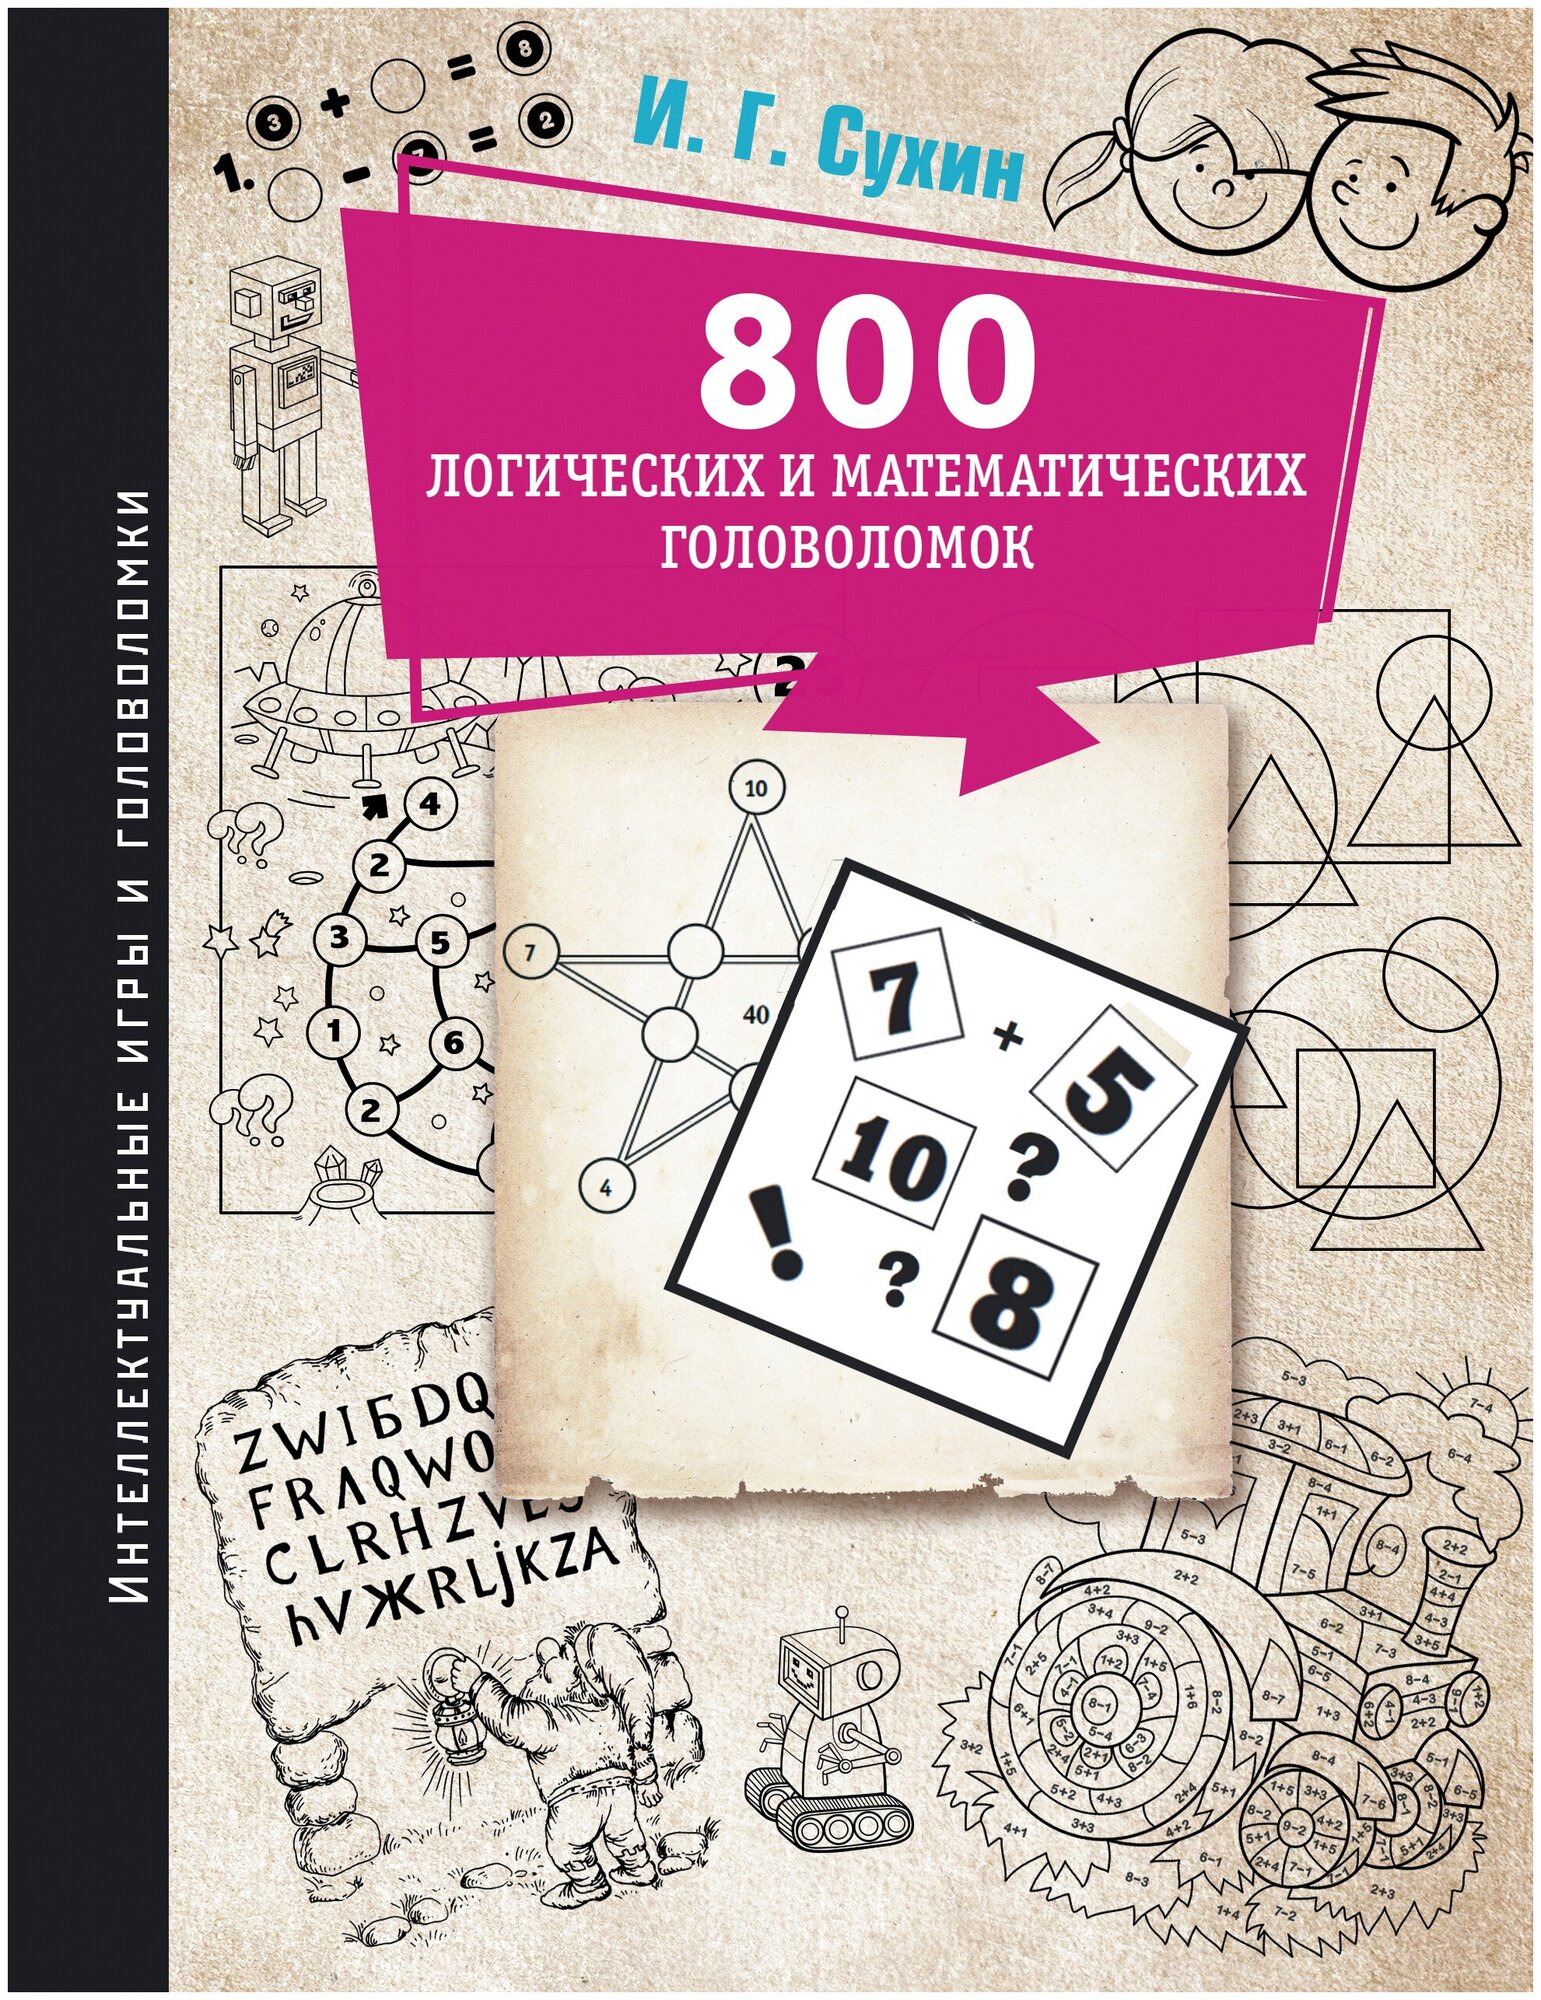 800 логических и математических головоломок Сухин И. Г.